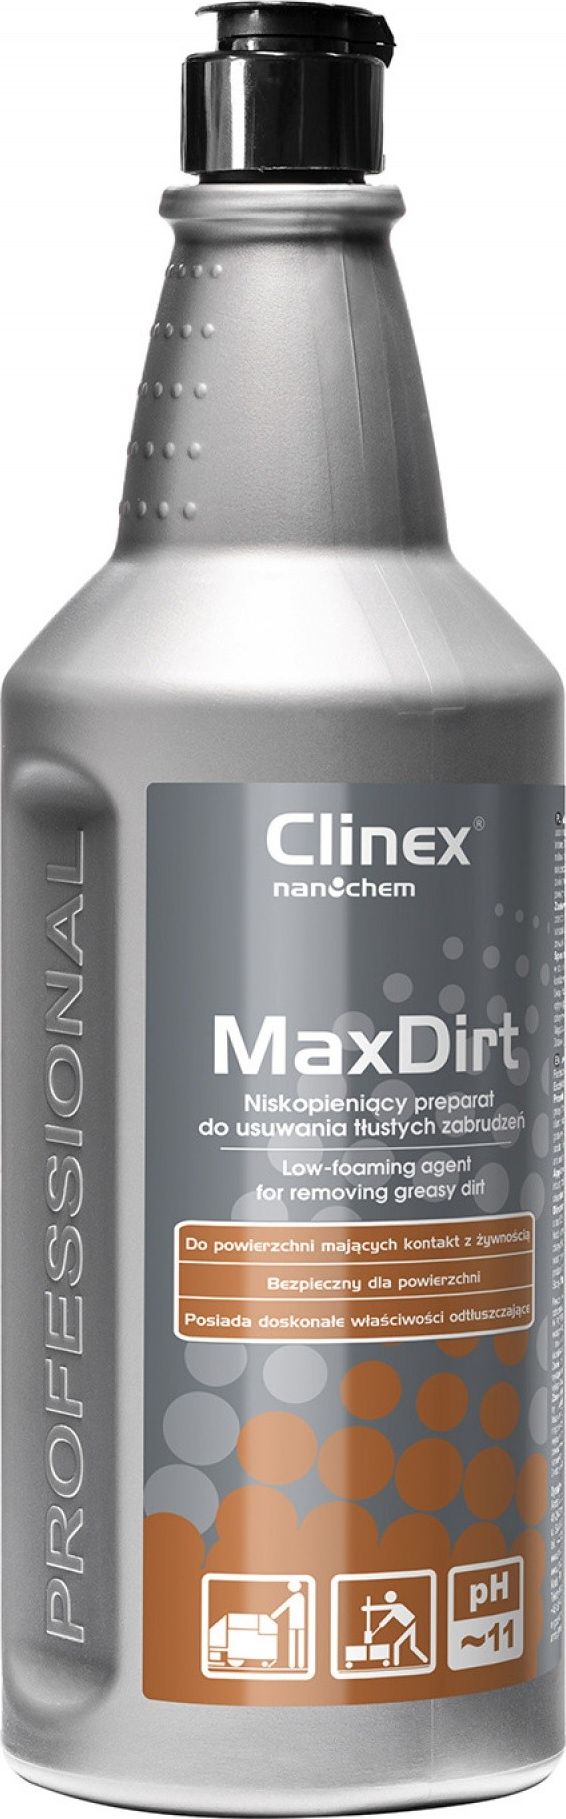 Solutie fara spuma, pentru suprafete murdare de grasime cu pulverizator, Clinex MaxDirt, 1 l